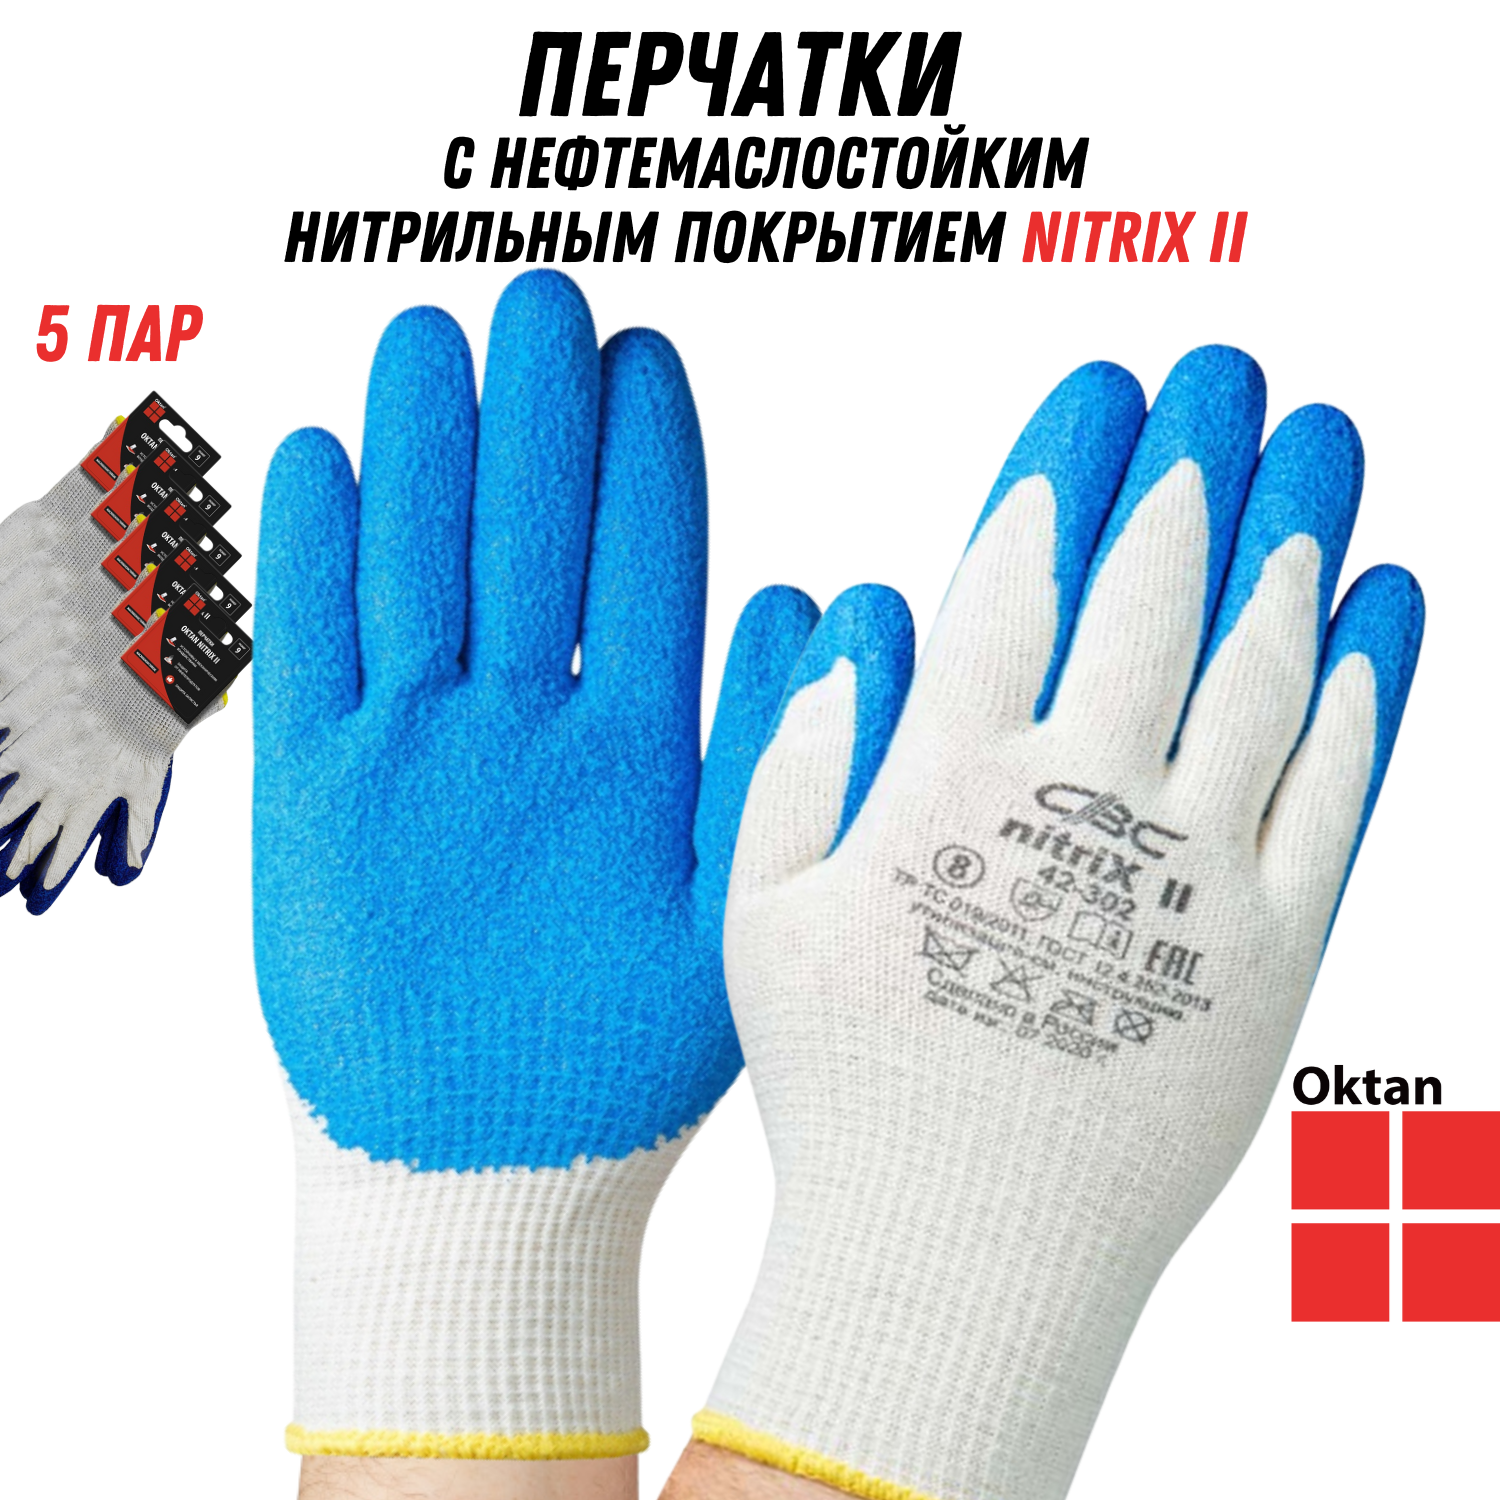 Перчатки рабочие Oktan NITRIX II А5-01-21-05-ММ белые с синим размер 9, 5 пар набор ручек шариковых 3 штуки стержень 1 0 мм синий корпус прозрачный с синим колпачком